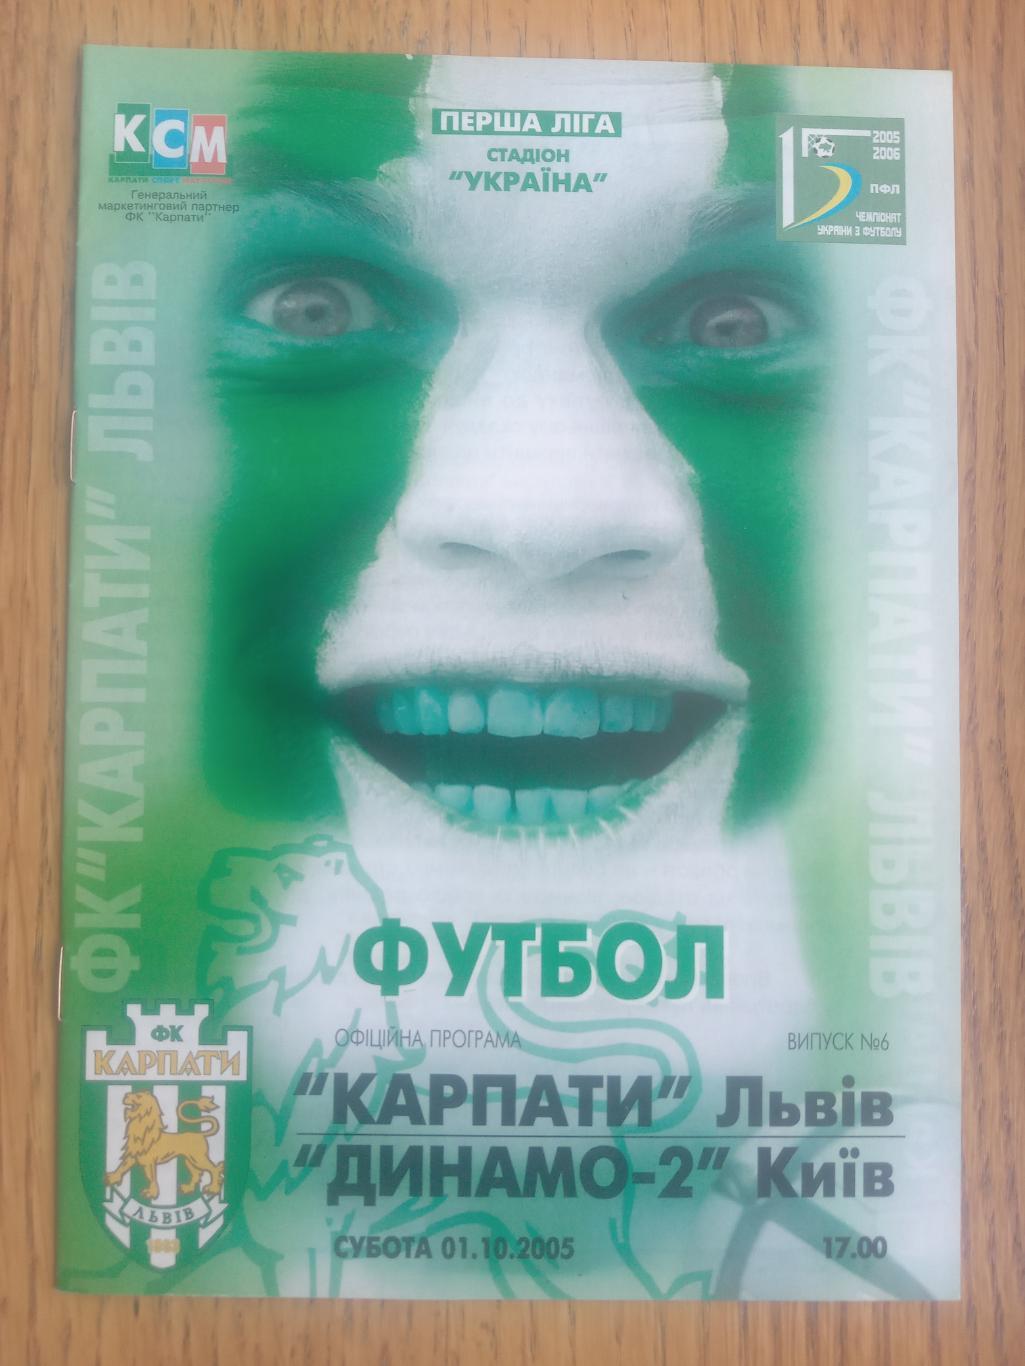 Карпати Львів - Динамо-2 Київ. 01.10.2005.м.